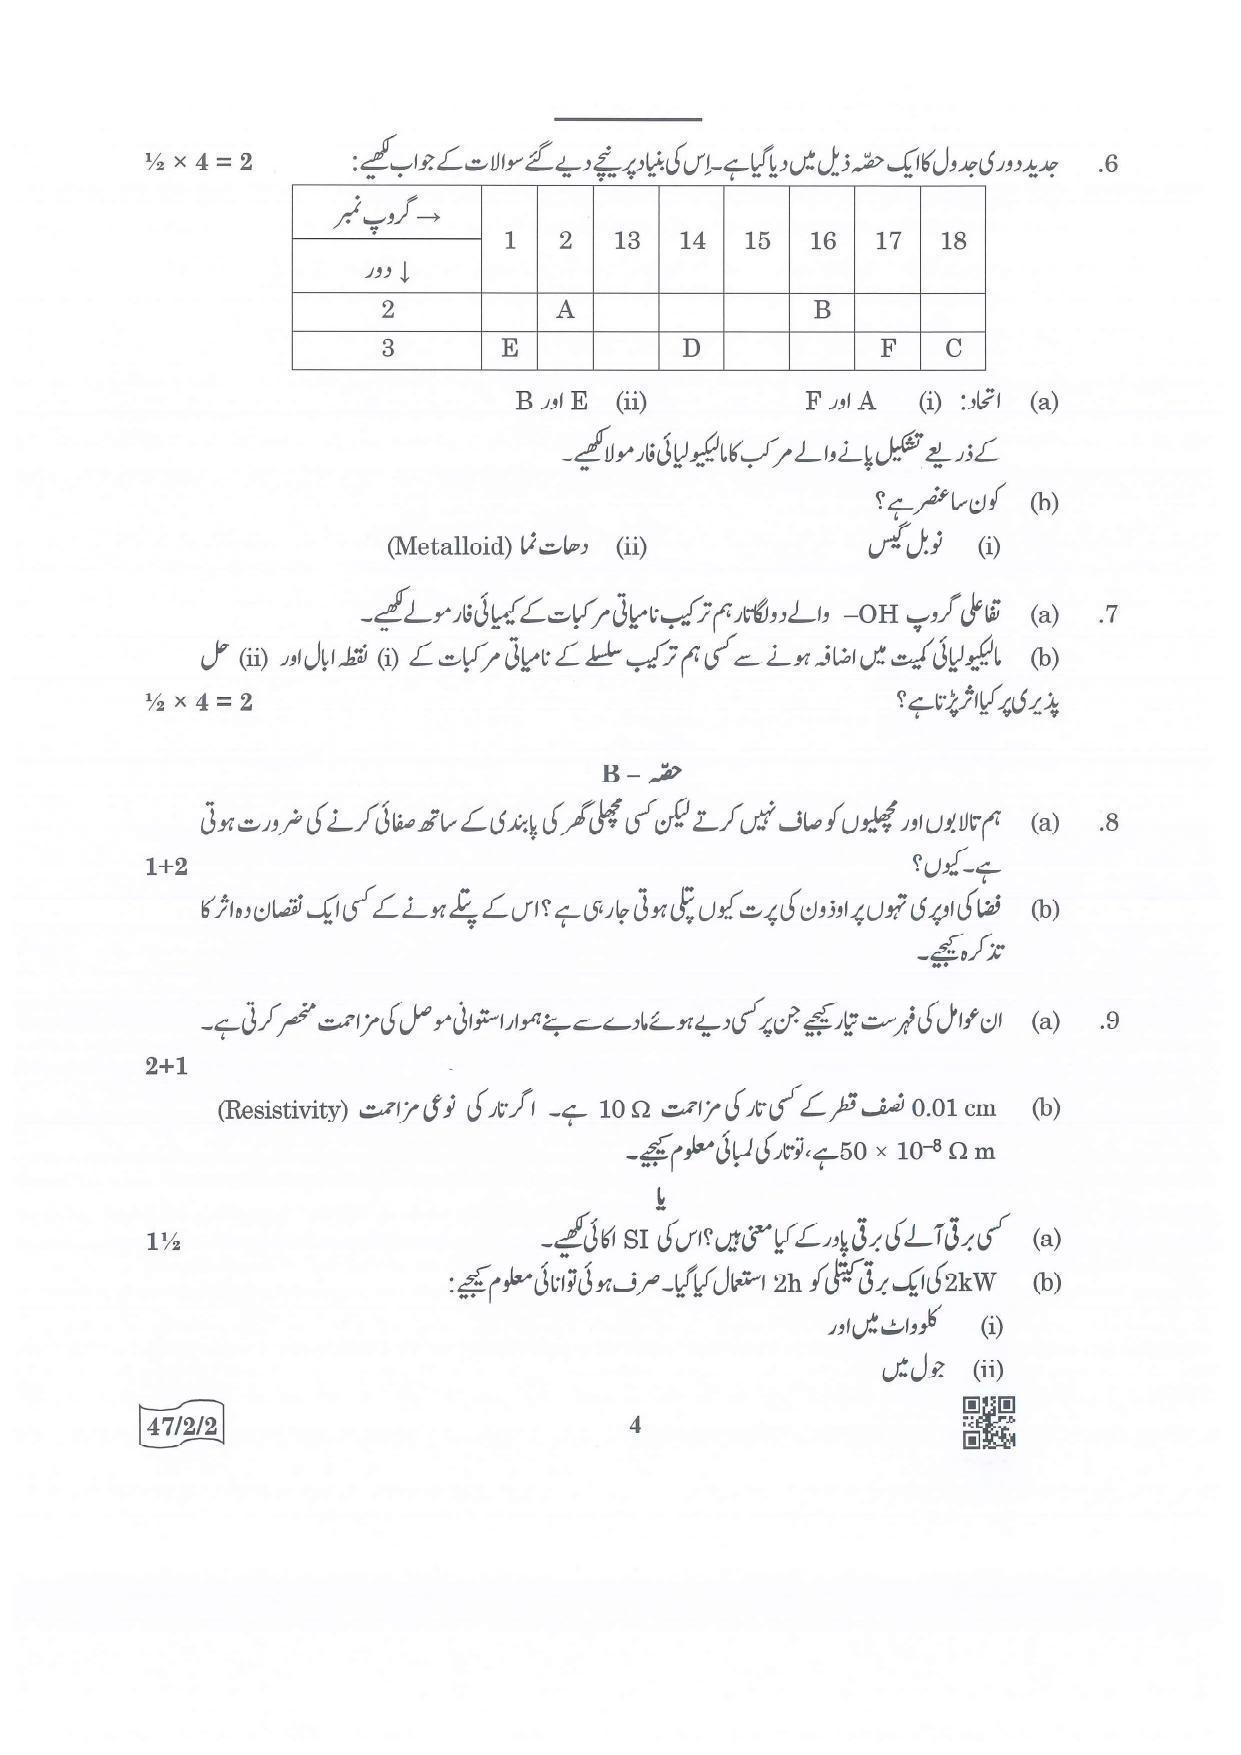 CBSE Class 10 47-2-2 Science Urdu Version.pdf 1 2022 Question Paper - Page 4